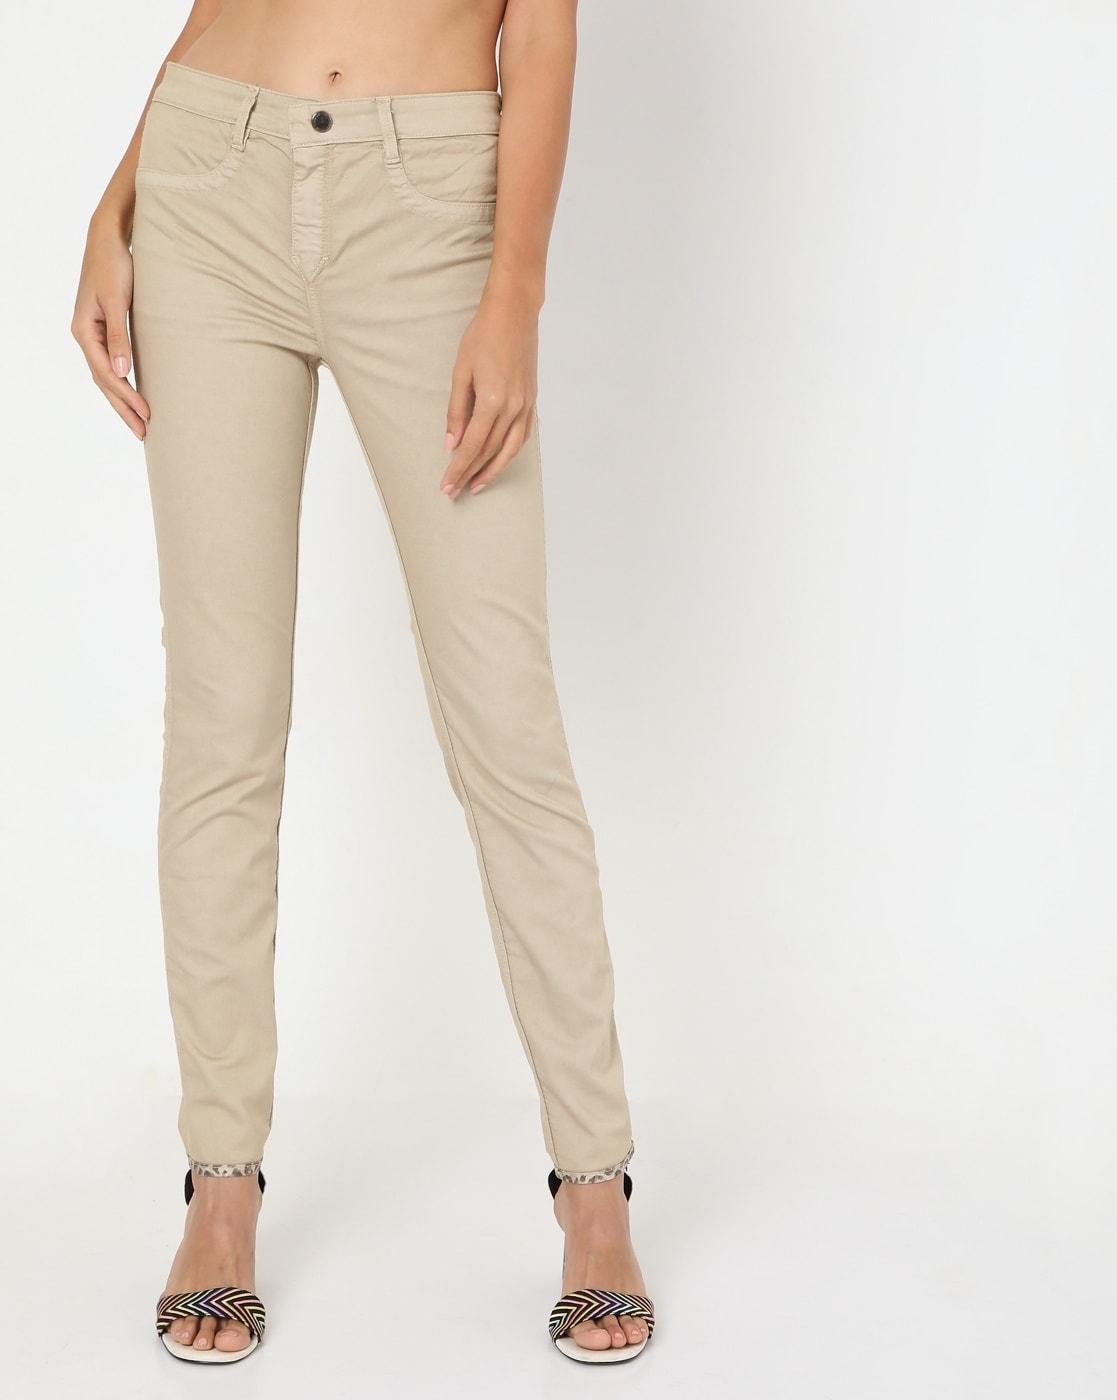 Buy Khaki Trousers  Pants for Women by GAS Online  Ajiocom